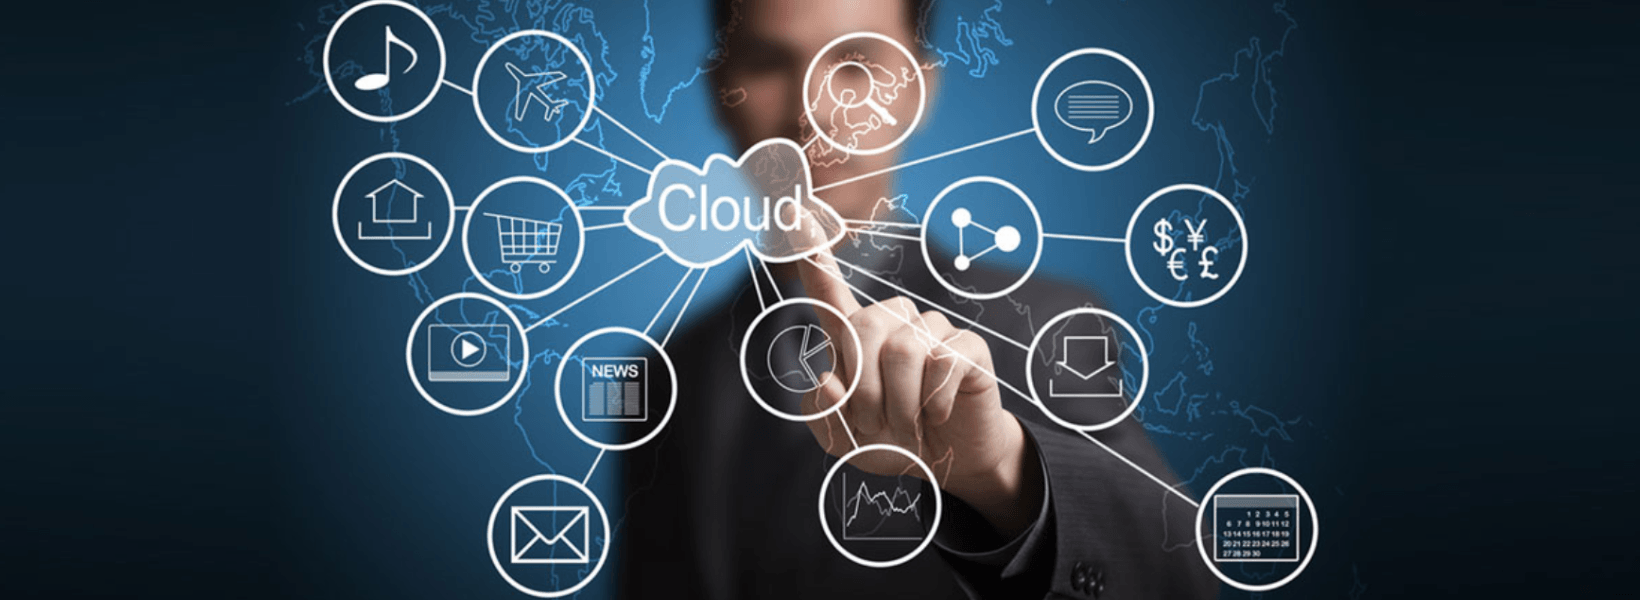 Cách quản lý tài nguyên trên Cloud Management